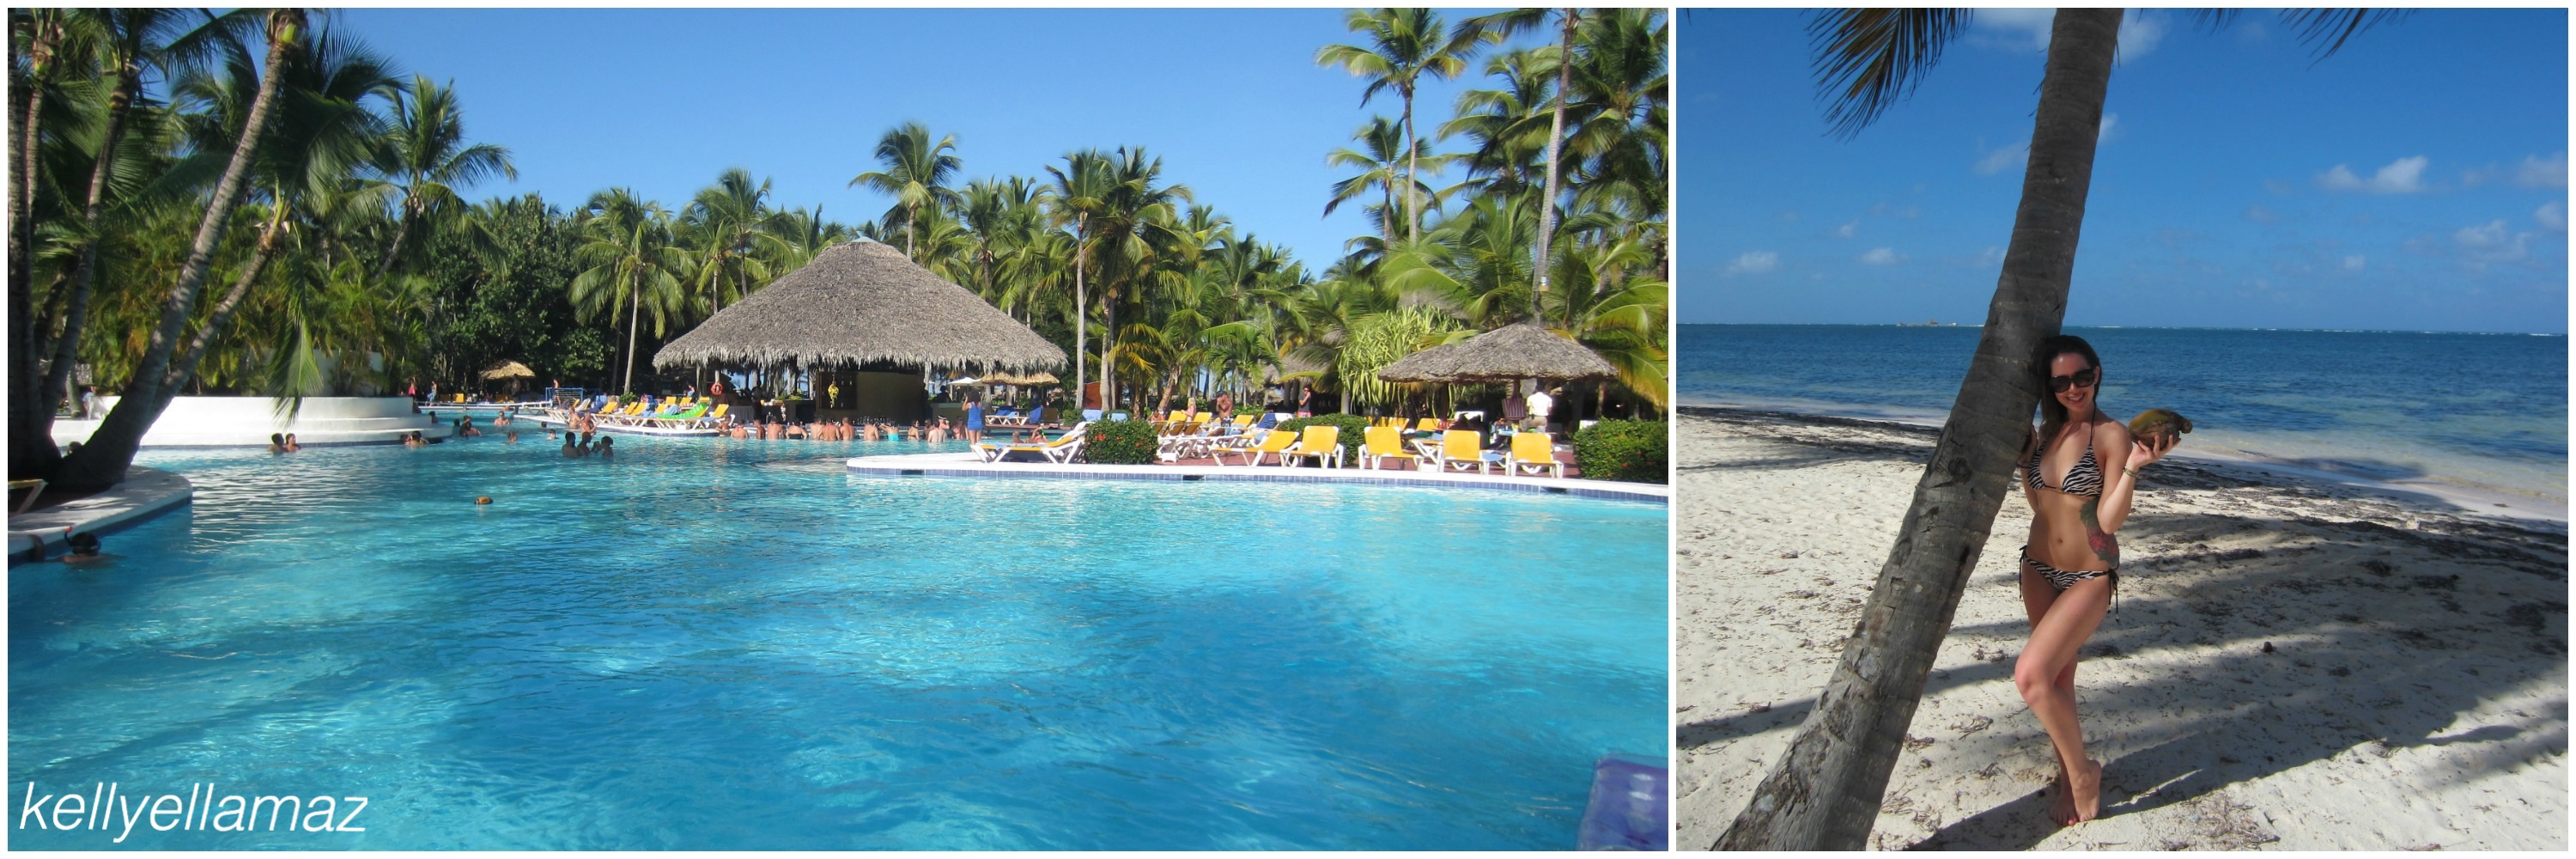 Hotel Review: Catalonia Bavaro Beach Resort, Punta Cana